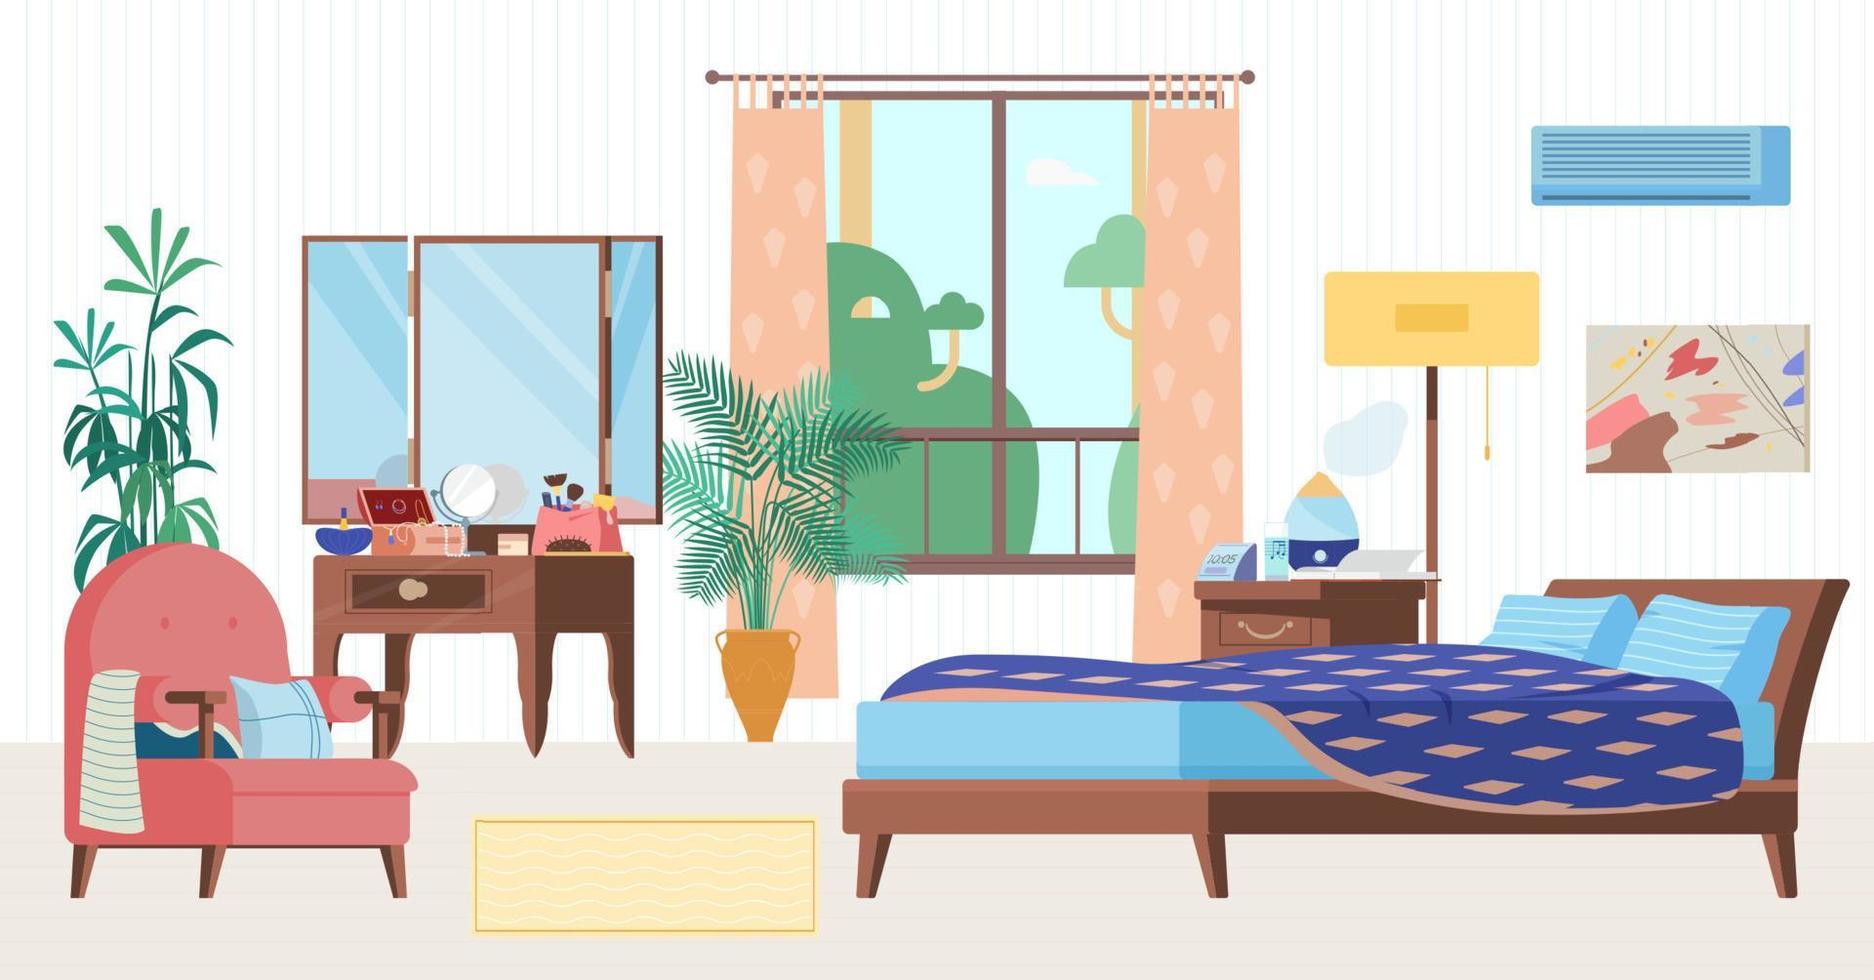 illustrazione vettoriale piatto interno accogliente camera da letto. mobili in legno, letto, poltrona, specchiera, finestra, comodino con umidificatore, orologio, piante.